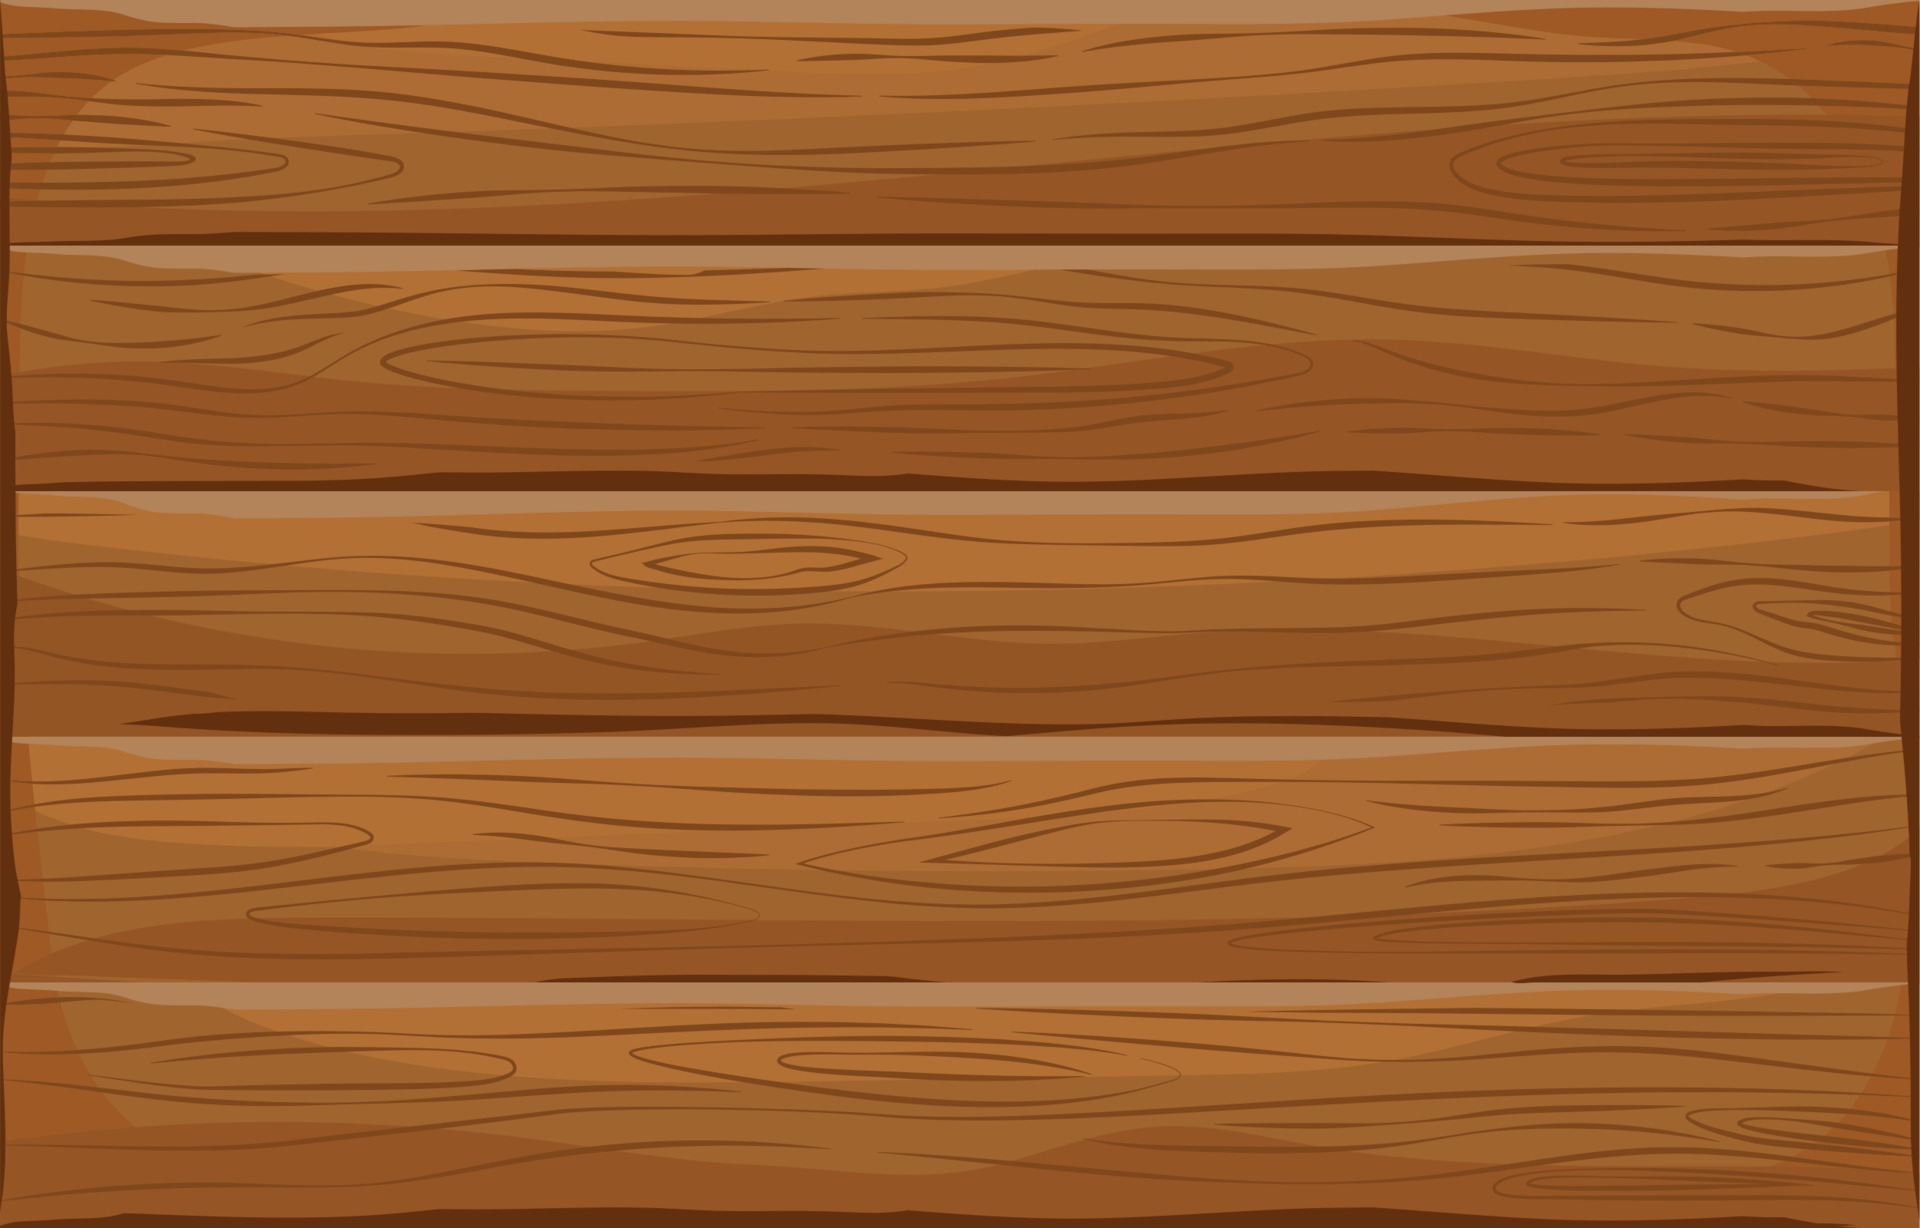 Nếu bạn đang tìm kiếm hình ảnh về Brown Wood Vector thì đây chính là giải pháp dành cho bạn. Kết hợp giữa màu sắc tuyệt vời và đường nét hoàn hảo của vector sẽ mang đến cho bạn một cảm giác thực sự đầy mới mẻ.